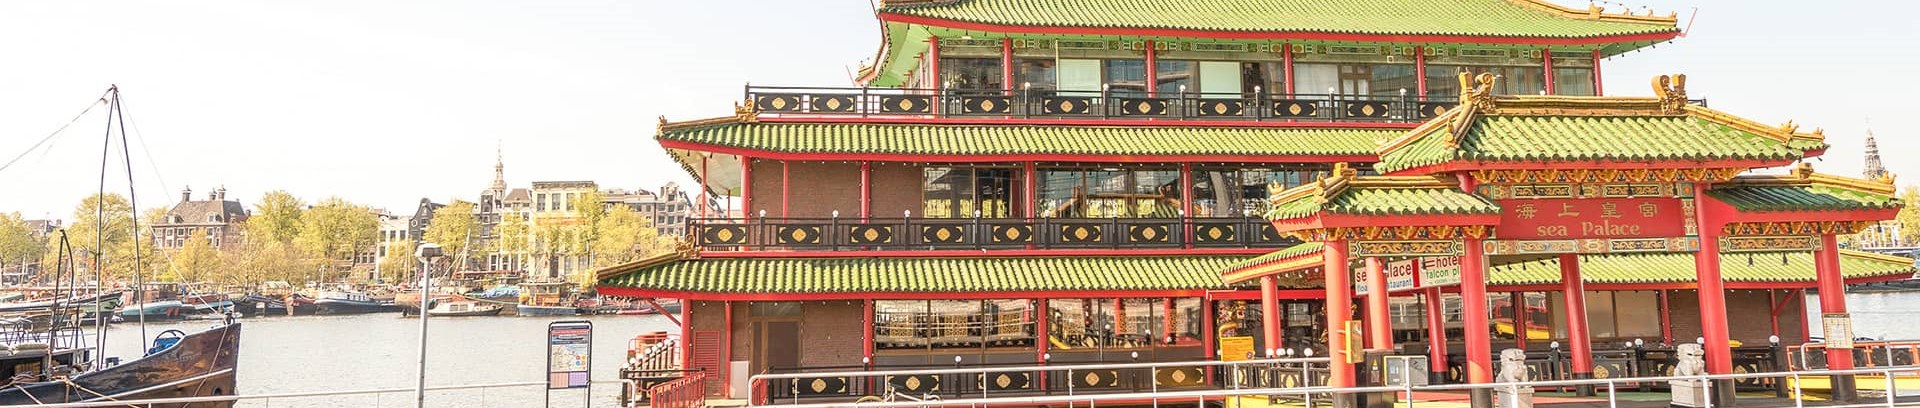 Billede af traditionel kinesisk bygning